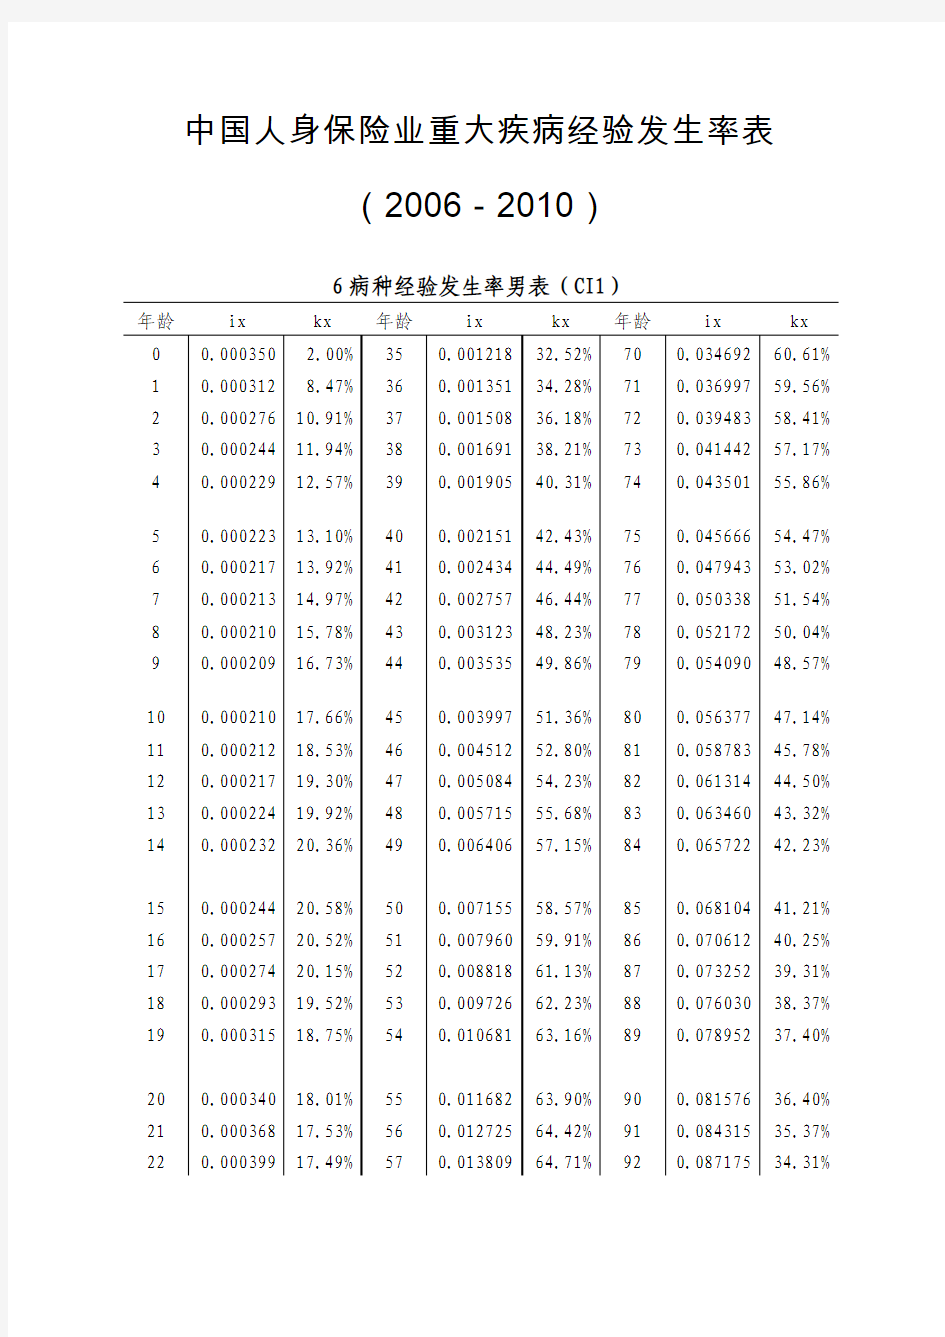 中国人身保险业重大疾病经验发生率2006-2010